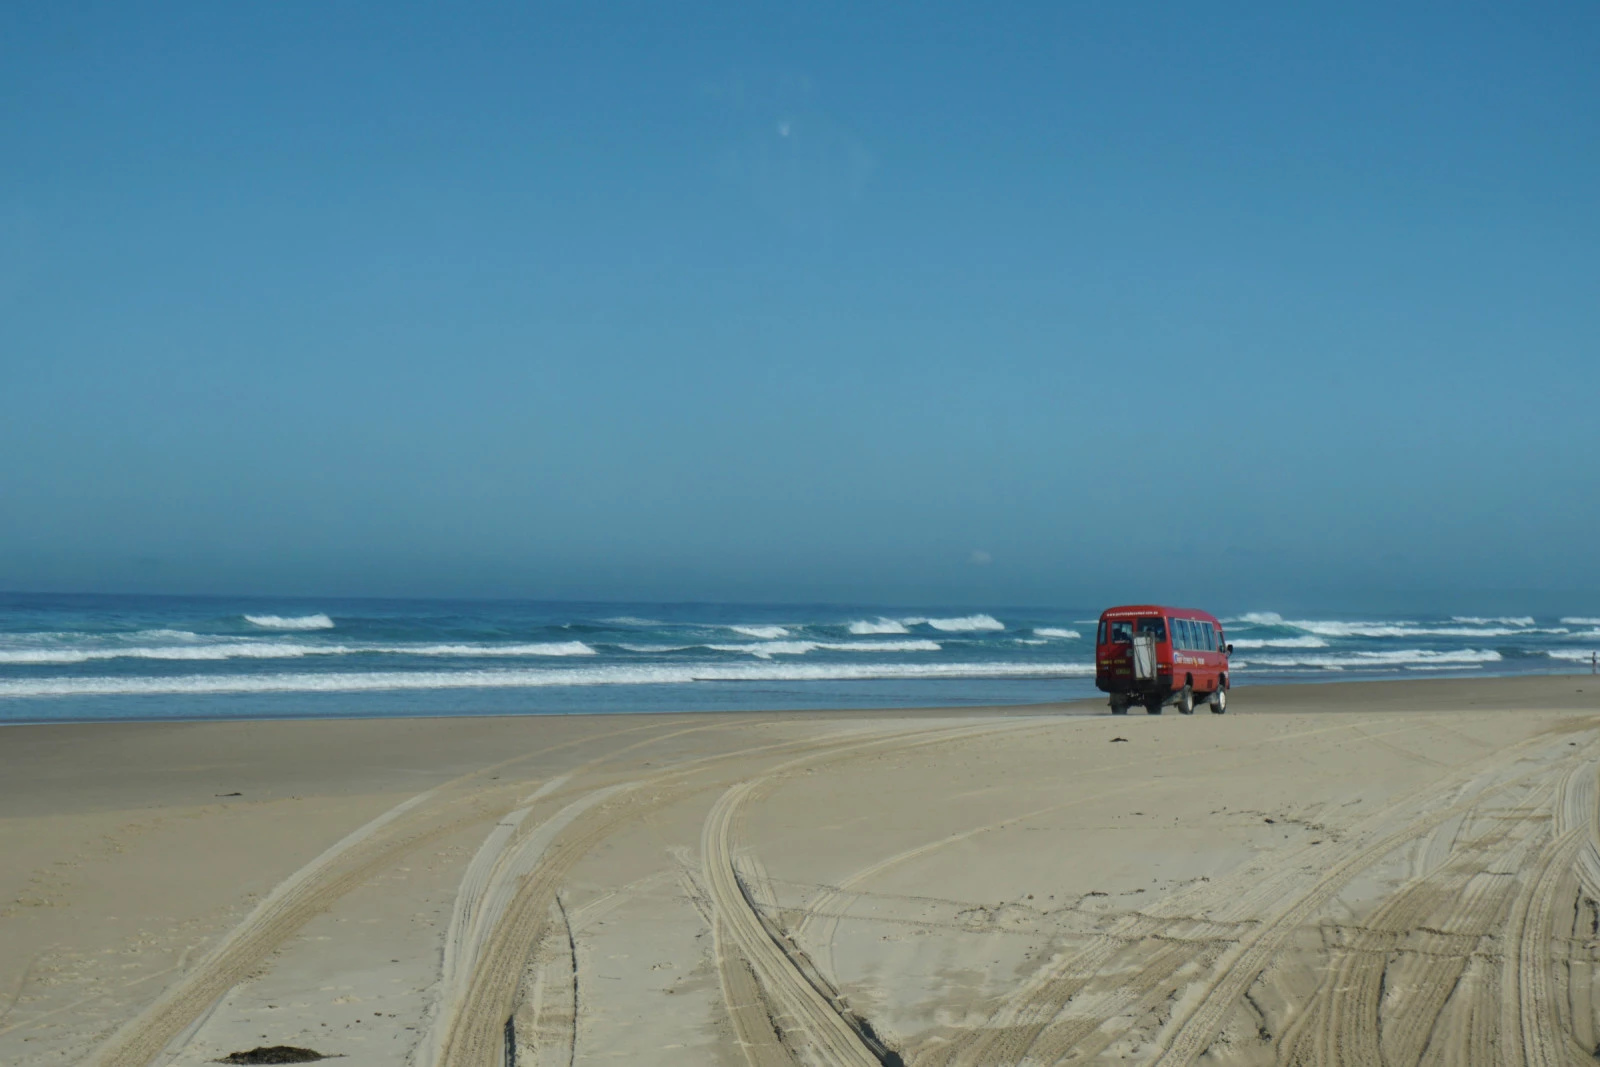 第二站，南半球最大的移动沙丘地安娜湾（Anna Bay），乘四驱车驰骋沙丘，体验滑沙快感，小肥在沙丘